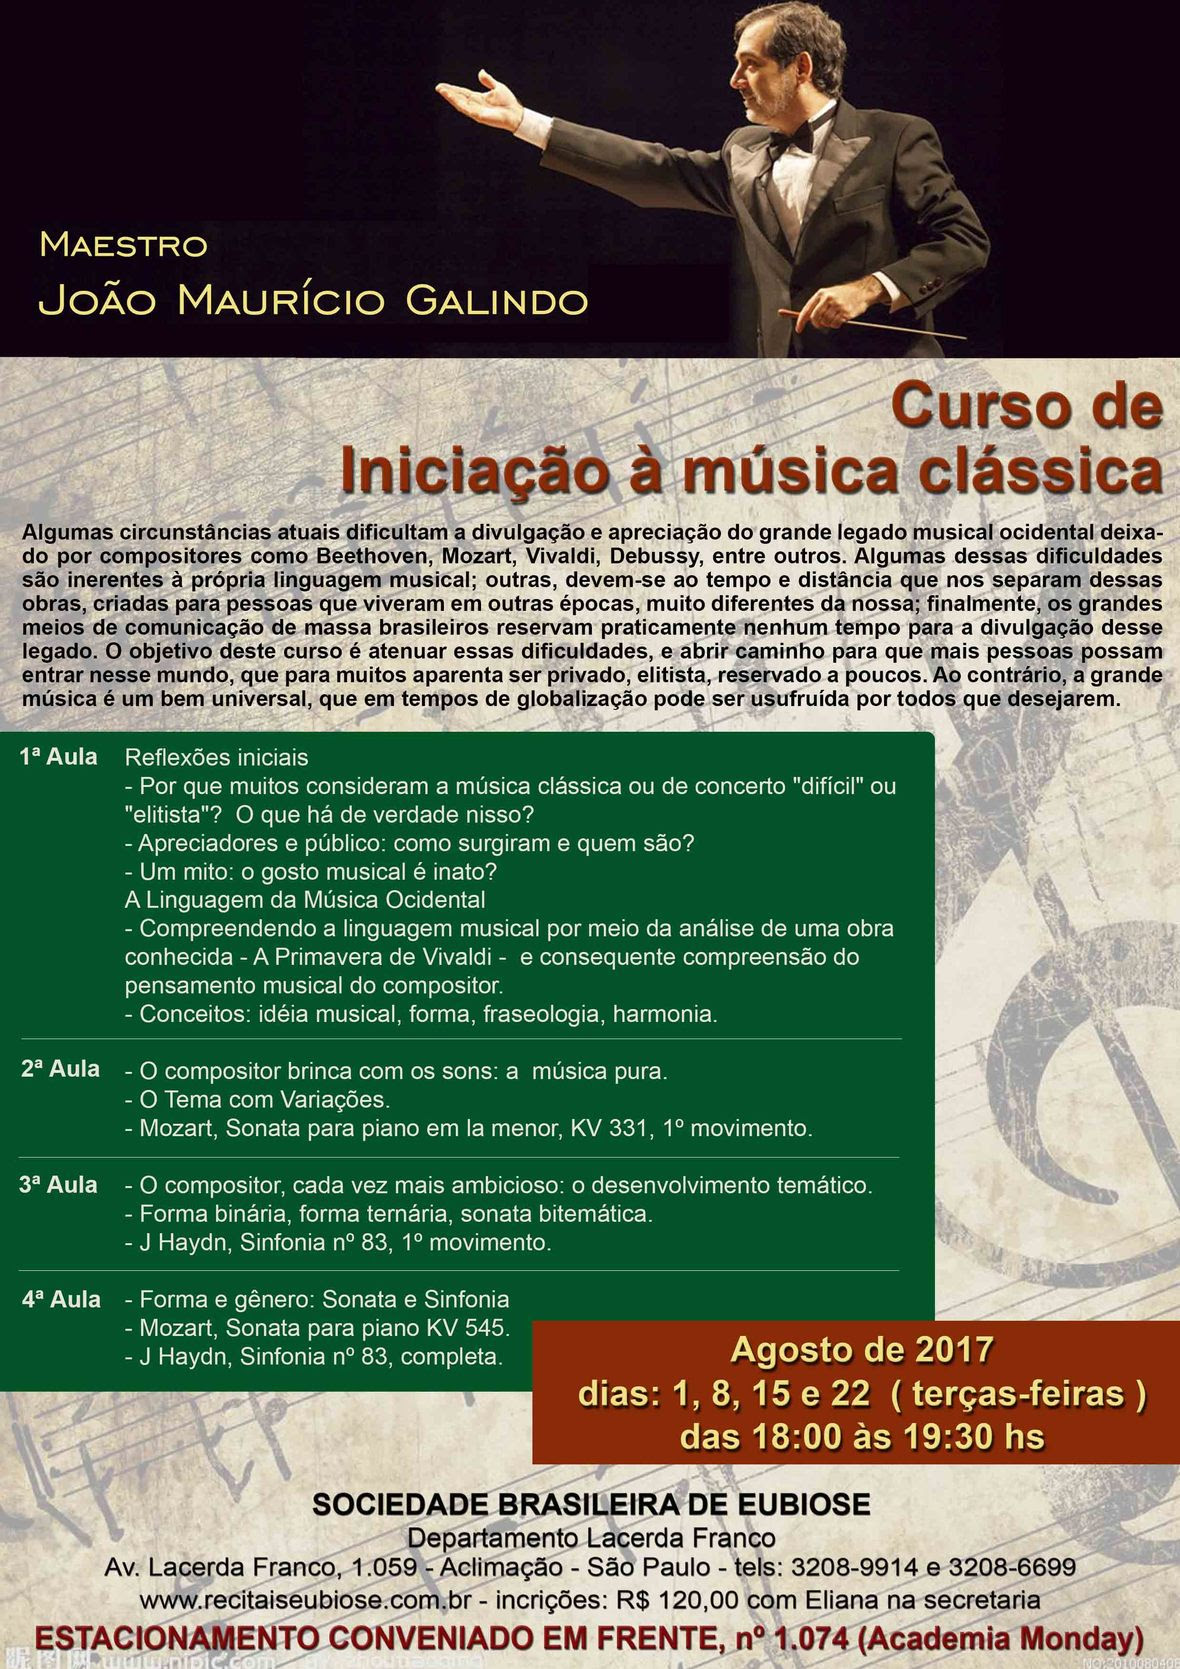 Curso de Iniciação à Música Clássica – Maestro João Maurício Galindo